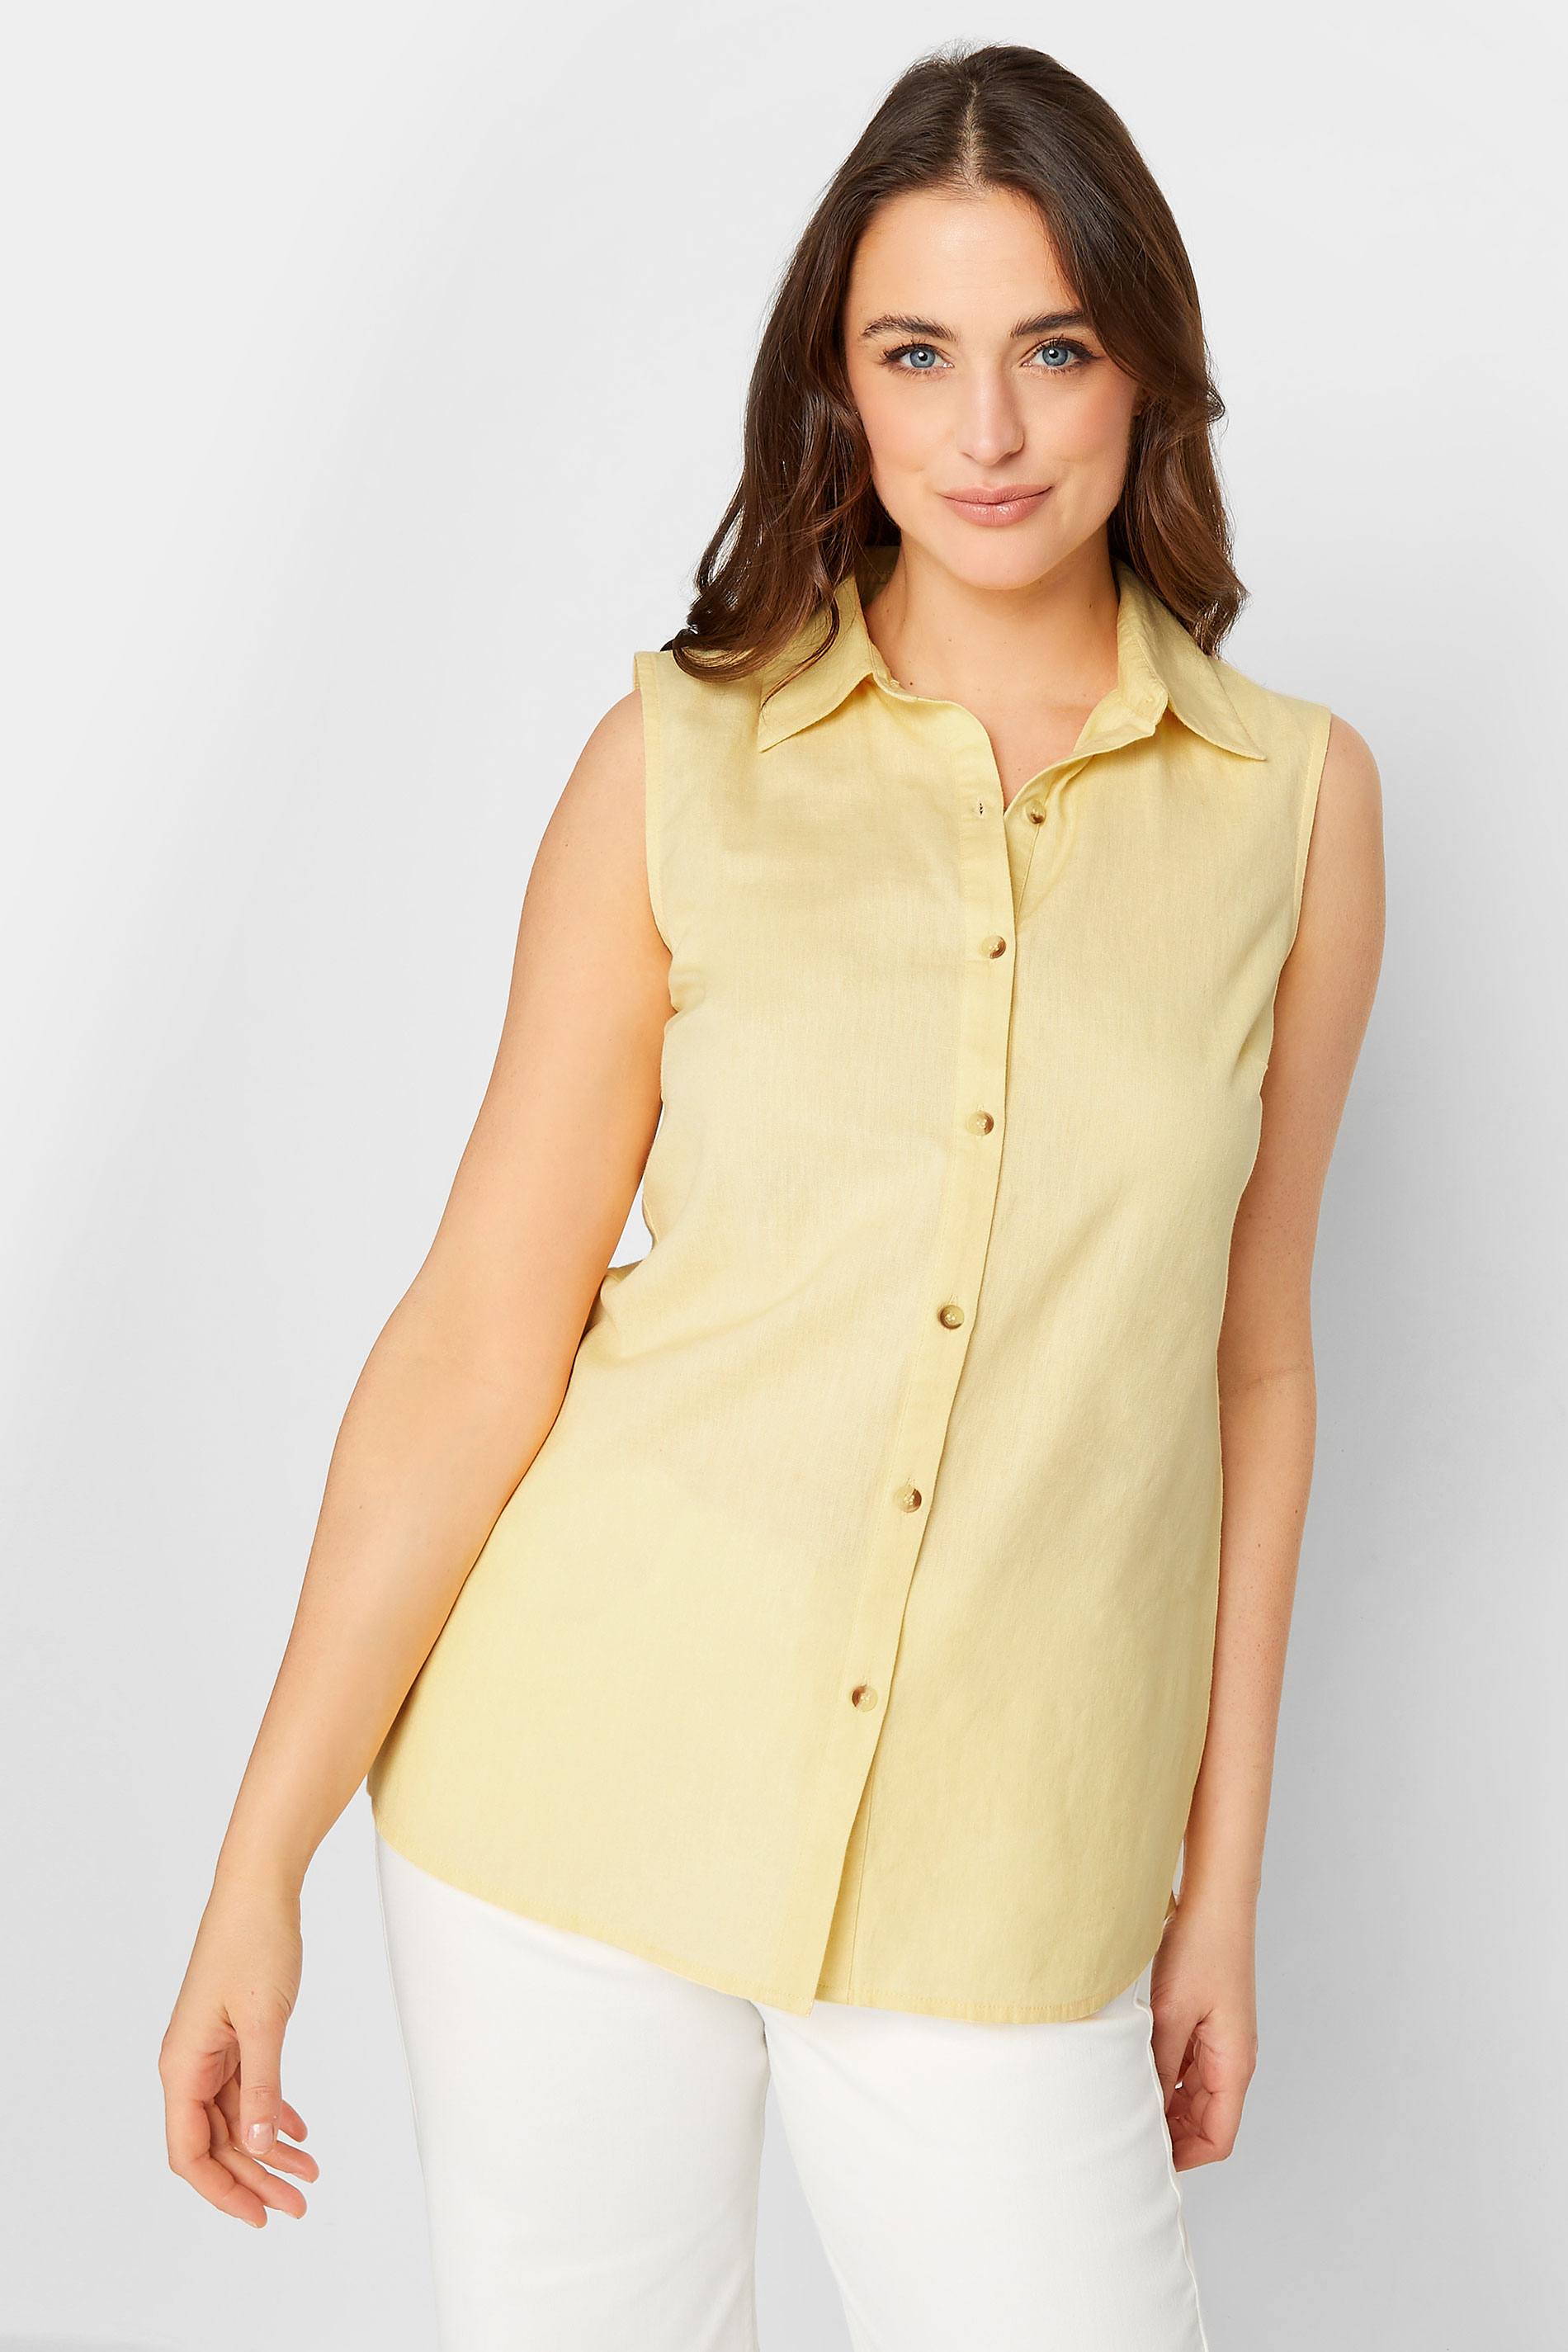 LTS Tall Women's Yellow Sleeveless Linen Blend Shirt | Long Tall Sally  1